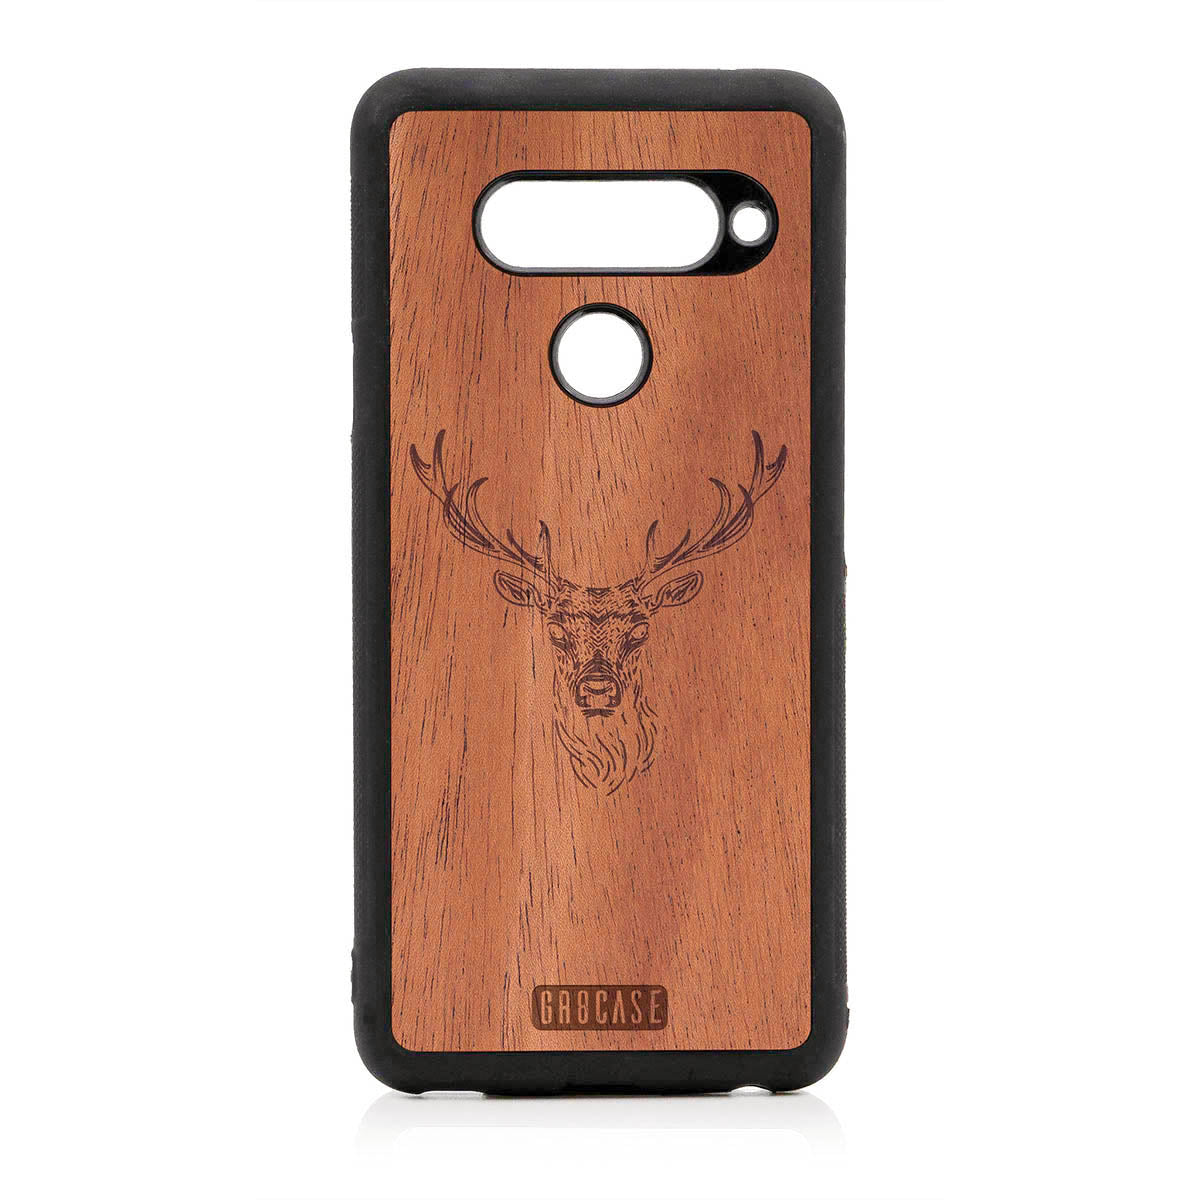 Elk Buck Design Wood Case For LG V40 ThinQ by GR8CASE